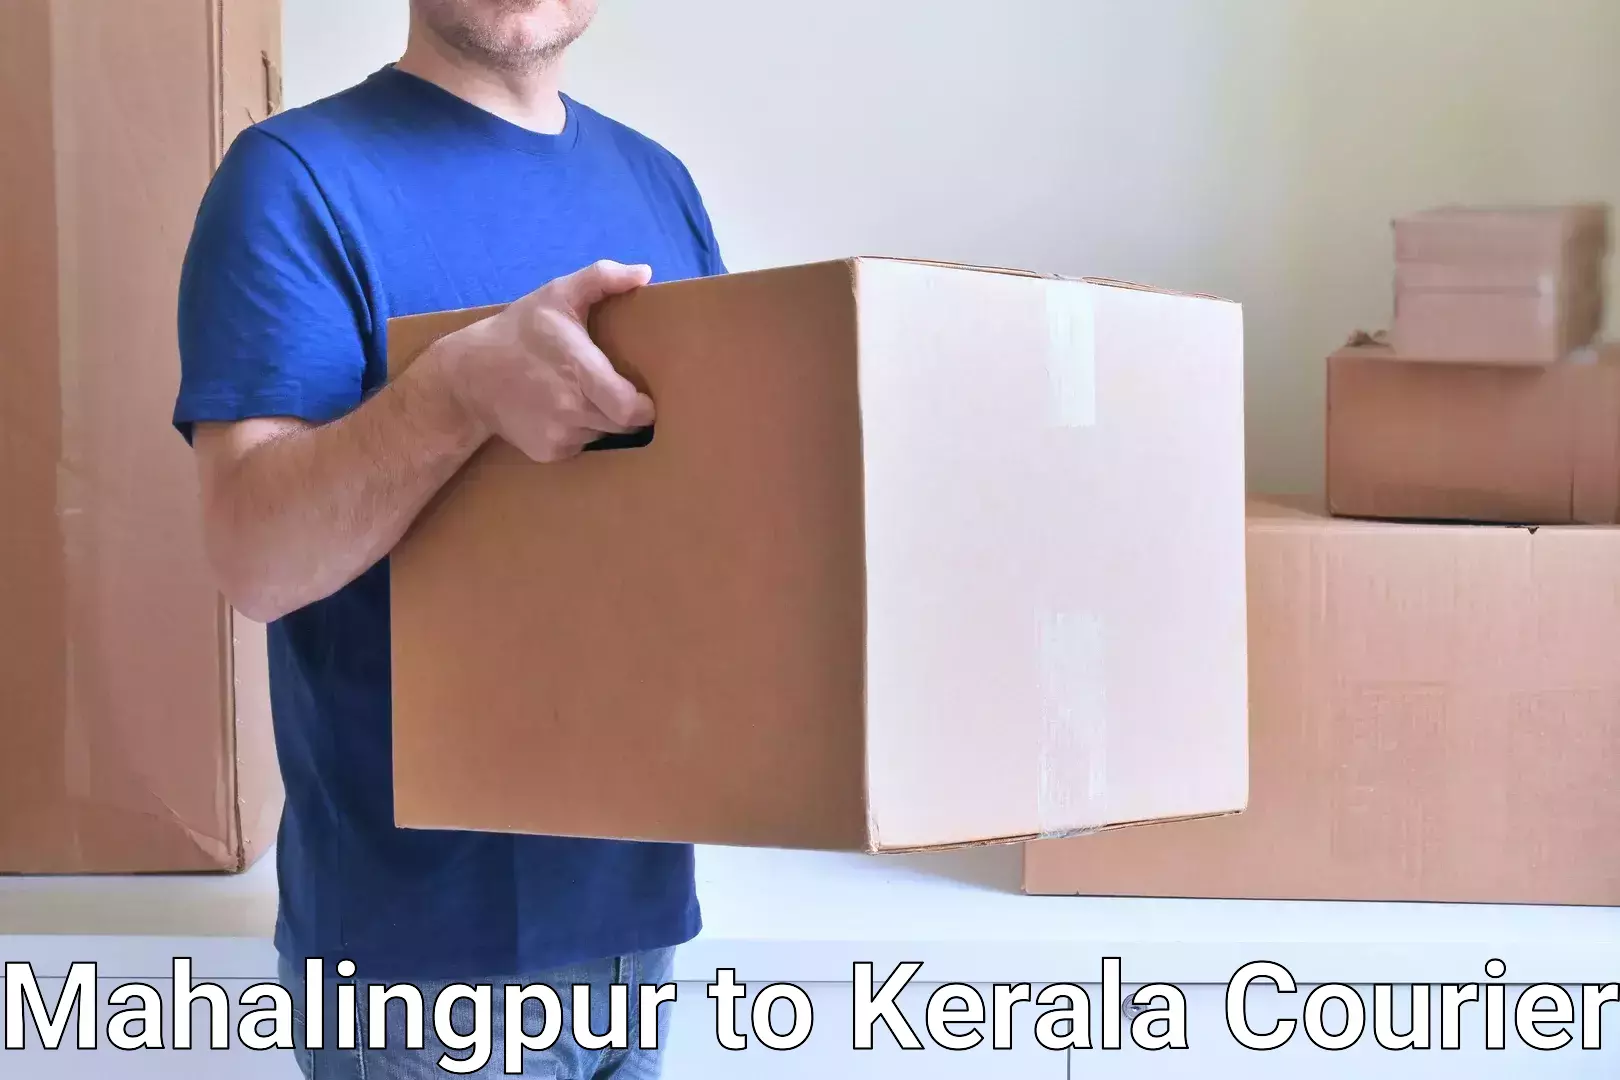 Express package handling Mahalingpur to Kalanjoor